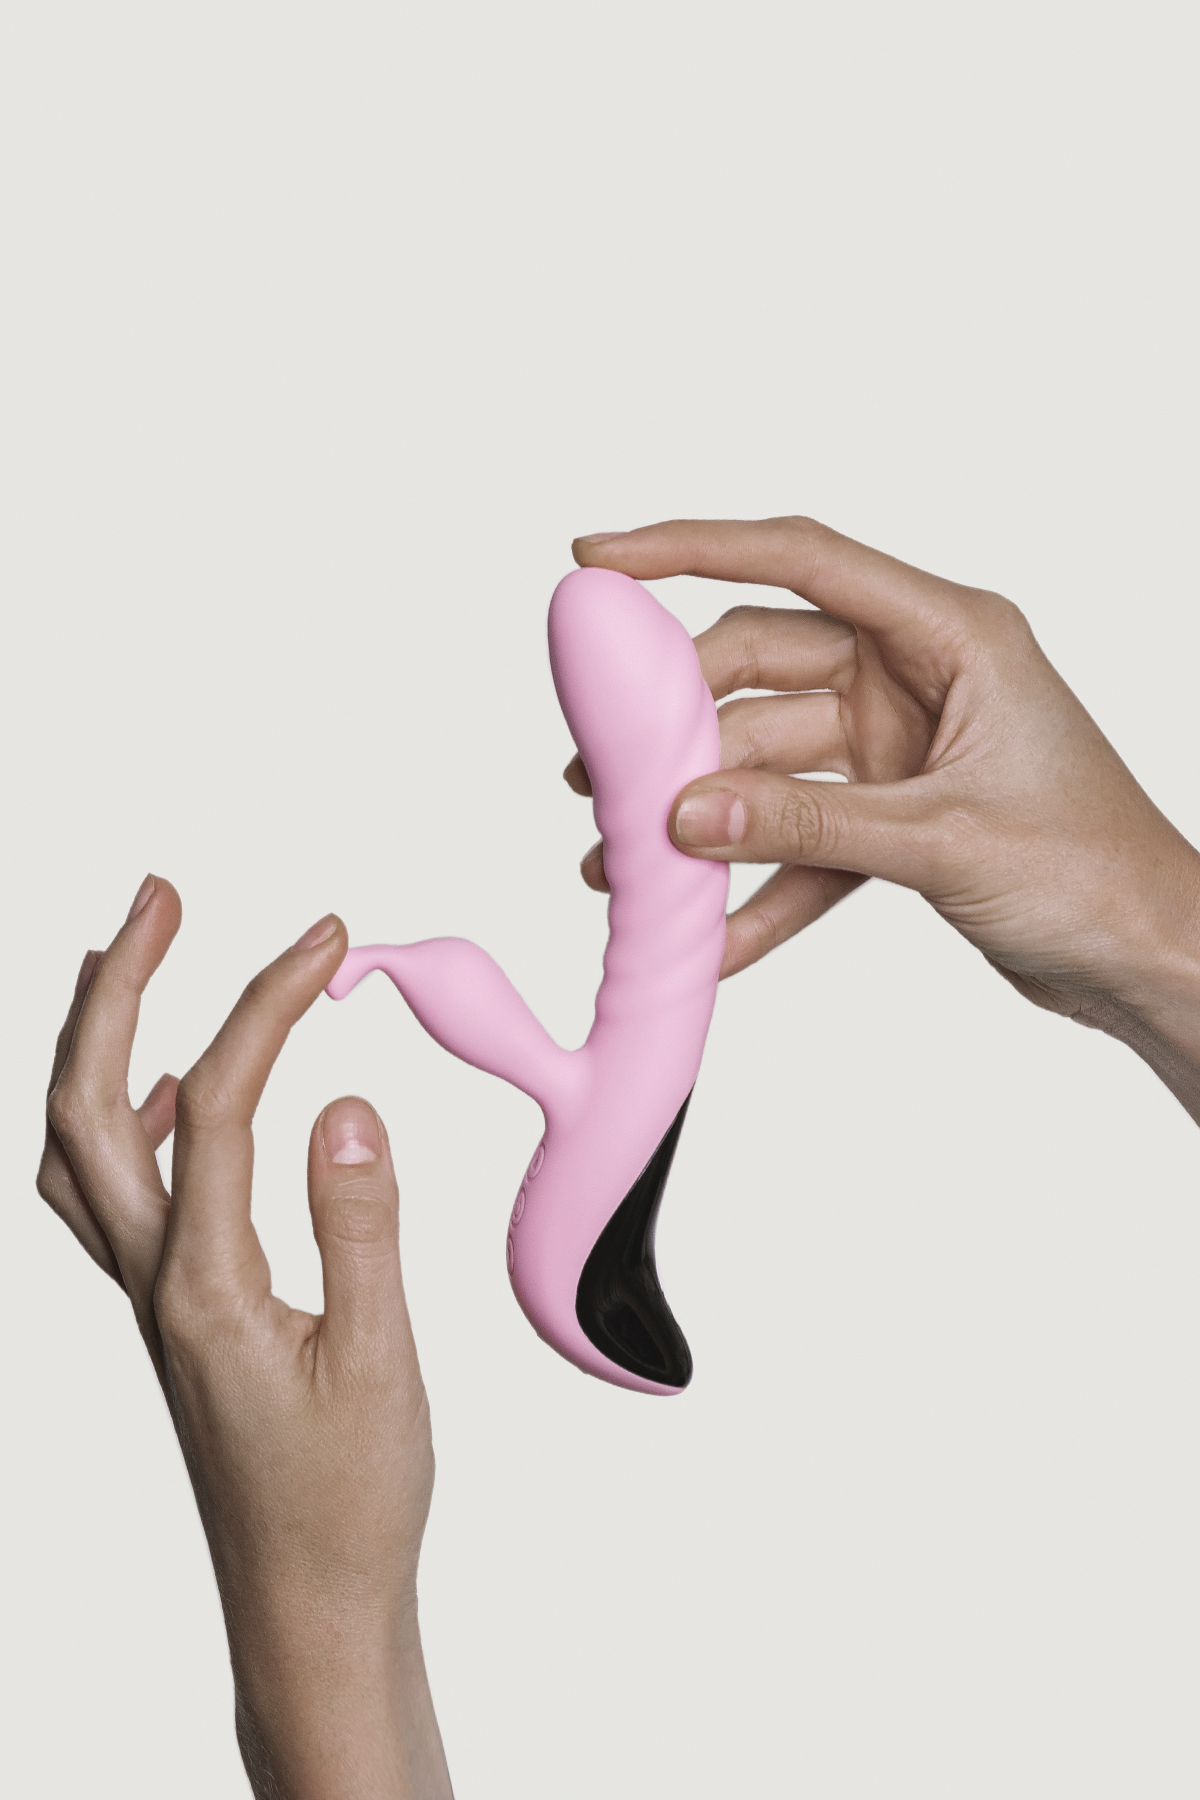 Dvigubas vibratorius "Mini Trigger" – Rožinis  
Kaip ir „Trigger“, šis vibruojantis žaisliukas pasižymi judesiu, populiariai vadinamu „ateik čia“, o jo dizainas ir švelnumas yra skirti suteikti malonumą žaidimo metu. 
  
„Mini Trigger“ yra masažuoklis su daugybe nepriklausomų vibracijų, kurios privers jus išprotėti iš malonumo. Pagamintas iš  aukščiausios kokybės silikono ir inovatyvaus dizaino, jis turi du galingus vibracijos varikliukus, kurių vienas yra klitoriaus, o kitas - vaginalinis, ir judesio varikliukas.   
Šis mažasis draugas yra idealus kompanionas kelionėse ir visur kitur - net duše ar vonioje dėl  vandeniui atsparios konstrukcijos.   Išsikrovus, lengvai pakrausite pridėtu USB laidu ir vėl galėsite naudotis. 
  
Tinkamai prižiūrint  šis vibratorius tarnaus tikrai ilgai. Prieš ir po kiekvieno naudojimo nuplaukite jį šiltu vandeniu ir švelniu muilu arba specialiu žaislų valikliu. Leiskite išdžiūti natūraliai. Šį sekso žaislą laikykite stalčiuje, specialiame maišelyje arba kitoje vietoje, kurioje nėra dulkių. Laikykite jį atokiau nuo kitų sekso žaislų. Nepalikite tiesioginiuose saulės spinduliuose ir niekada nelaikykite jo dideliame karštyje. 
  
Rekomenduojama naudoti kartu su vandens pagrindo lubrikantu.  Nenaudokite silikoninių lubrikantų, aliejų ar kremų, nes jie gali sugadinti prietaiso medžiagą ir apriboti jo veikimą bei galiojimo laiką.  
Dvigubo vibratoriaus naudojimo būdai:  
Kai kurios moterys naudoja dvipusius vibratorius seksui su antrąja moterimi. Dildo dvigubas galas leidžia vienu metu prasiskverbti į dvi makštis.  
Nuo makšties iki išangės. Dauguma dvigubo įsiskverbimo dildo yra skirti tuo pačiu metu stimuliuoti išangės ir makšties erogenines zonas, tačiau pailgintų dvigubų vibratorių atveju du partneriai gali naudoti tą patį žaisliuką vienu metu.   
Išangė į išangę. Dauguma dvipusių dildo gali būti naudojami abiejų partnerių analiniam įsiskverbimui.  
Imituojamą oralinį seksą taip pat galima atlikti su dvipusiu vibratoriumi.  
  Kodėl jums reikalingas vibratorius? 
Vibratorius ar klasikinis vibratorius yra sekso žaislas, naudojamas ant kūno maloniai seksualinei stimuliacijai kelti. 
Vibratoriai gali būti naudojami tiek solo, tiek poroje ar kelių žmonių žaidimams kartu. Taip pat jie gali būti naudojami erogeninėms zonoms, tokioms kaip klitoris, vulva ar makštis, varpa, kapšelis ar išangė, siekiant seksualiai stimuliuoti, išlaisvinti seksualumą ir pasiekti orgazmą. 
Vibratoriai yra rekomenduojami sekso terapeutų moterims, kurioms sunku pasiekti orgazmą masturbacijos ar lytinių santykių metu.